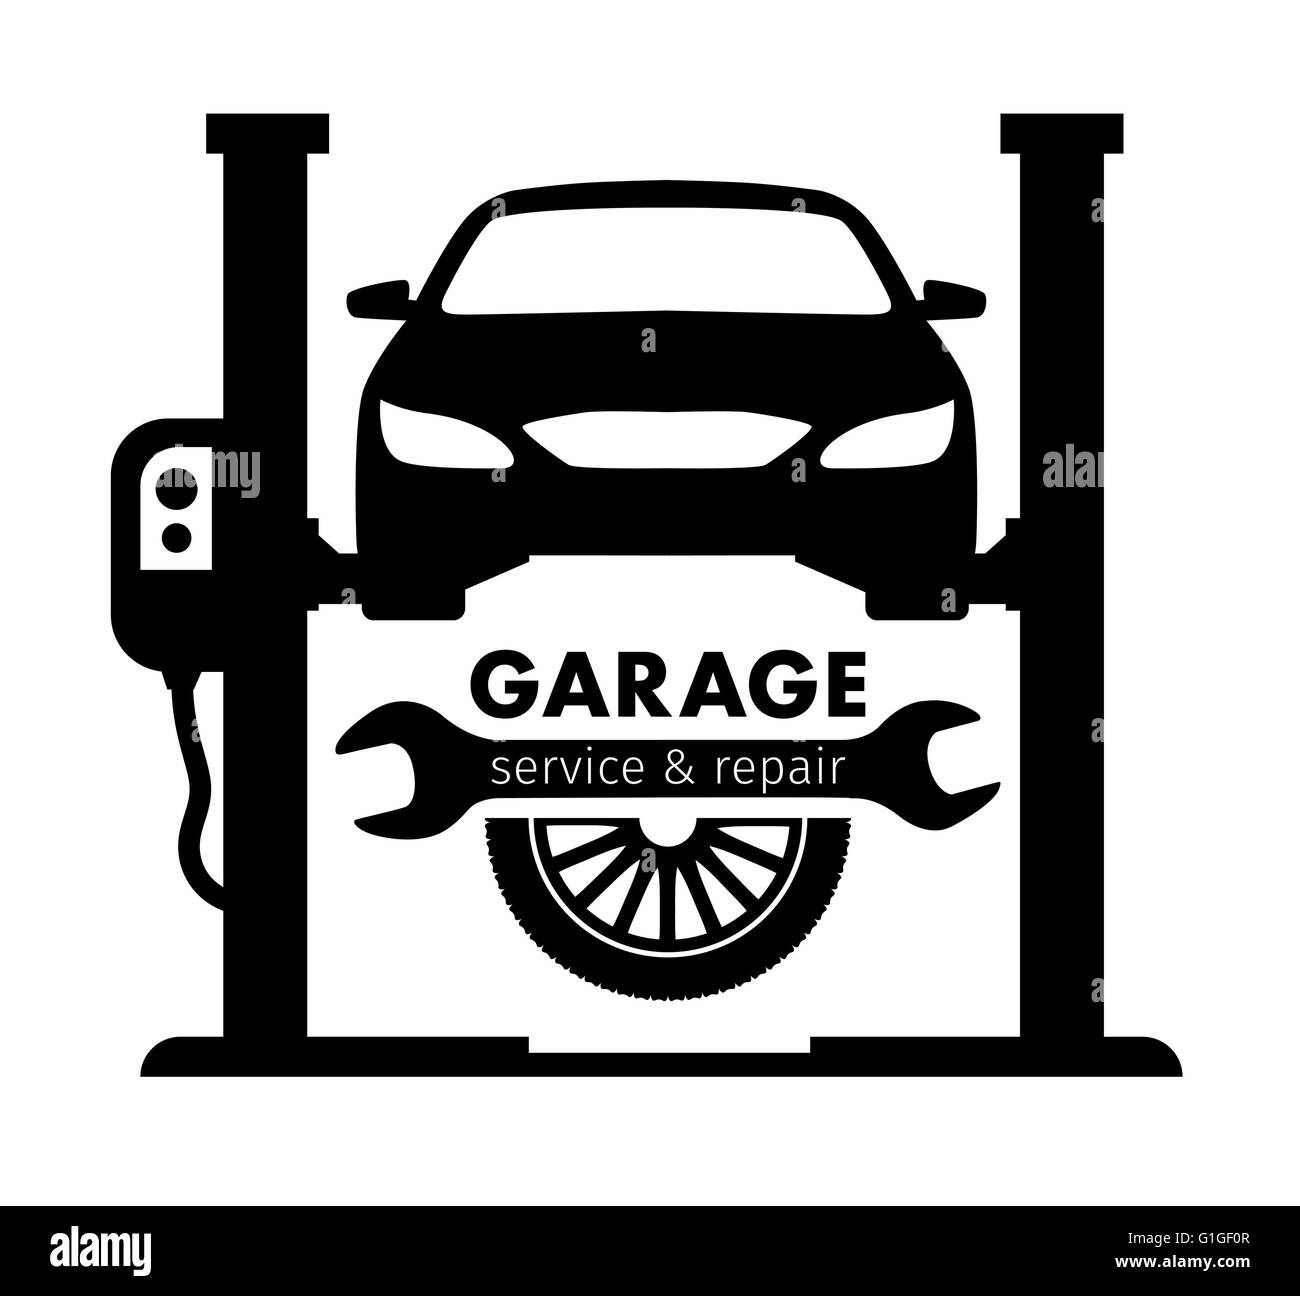 Car auto garage logo Royalty Free Vector Image